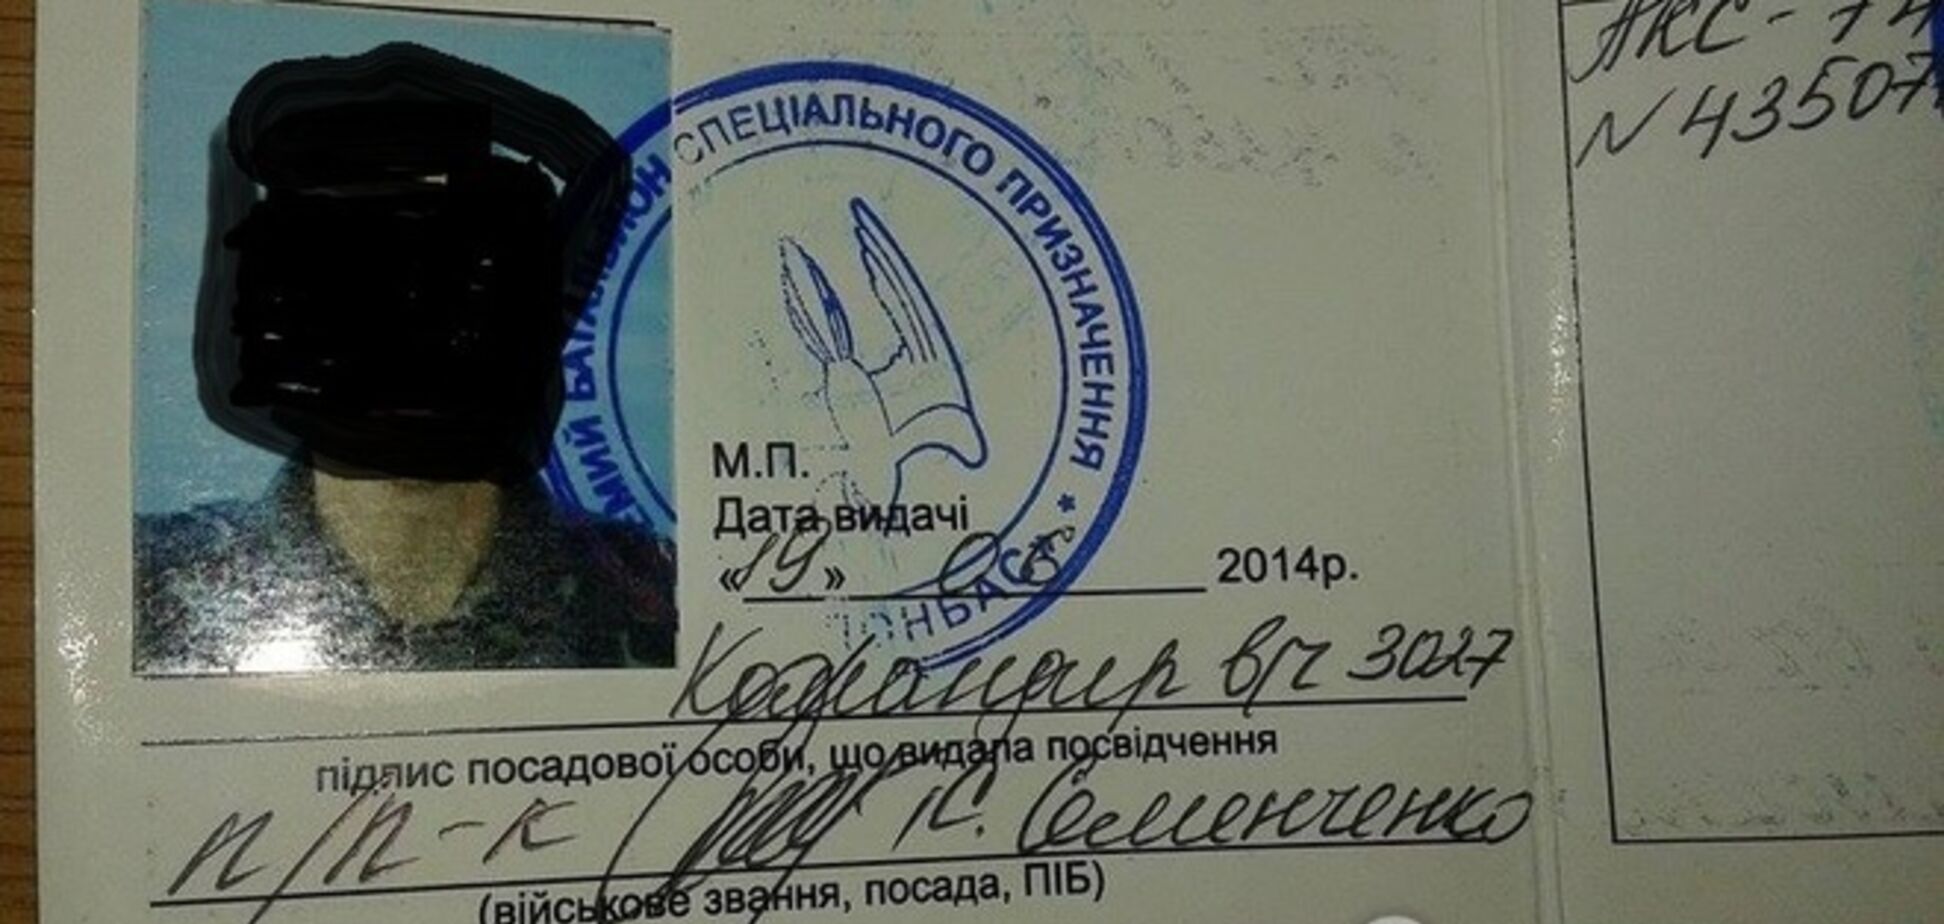 Народный депутат Семен Семенченко причастен к подделке документов